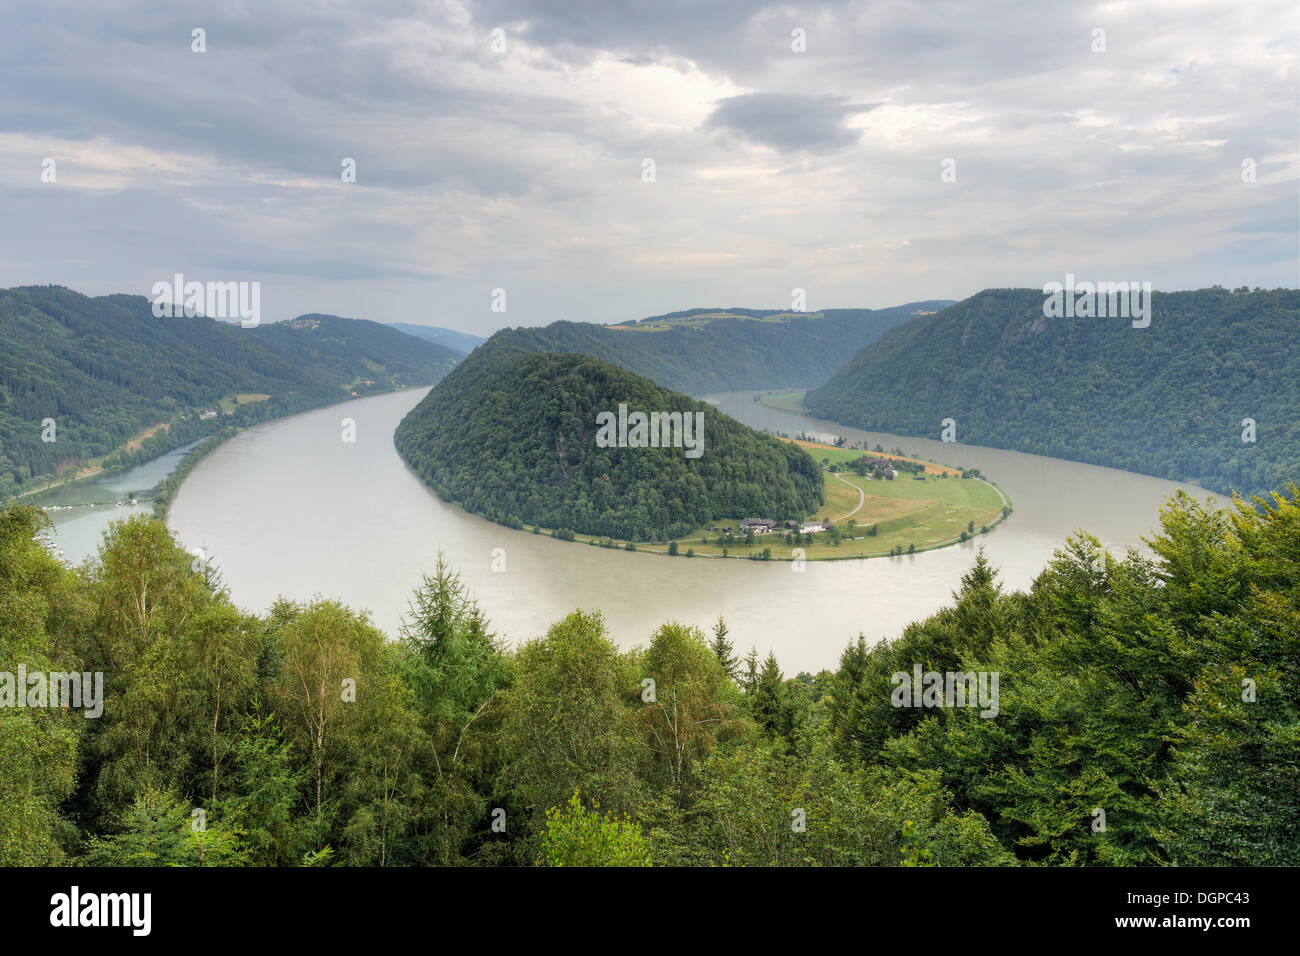 Danube River at the Schloegen Loop, municipality of Haibach ob der Donau, Hausruckviertel region, Upper Austria, Austria, Europe Stock Photo